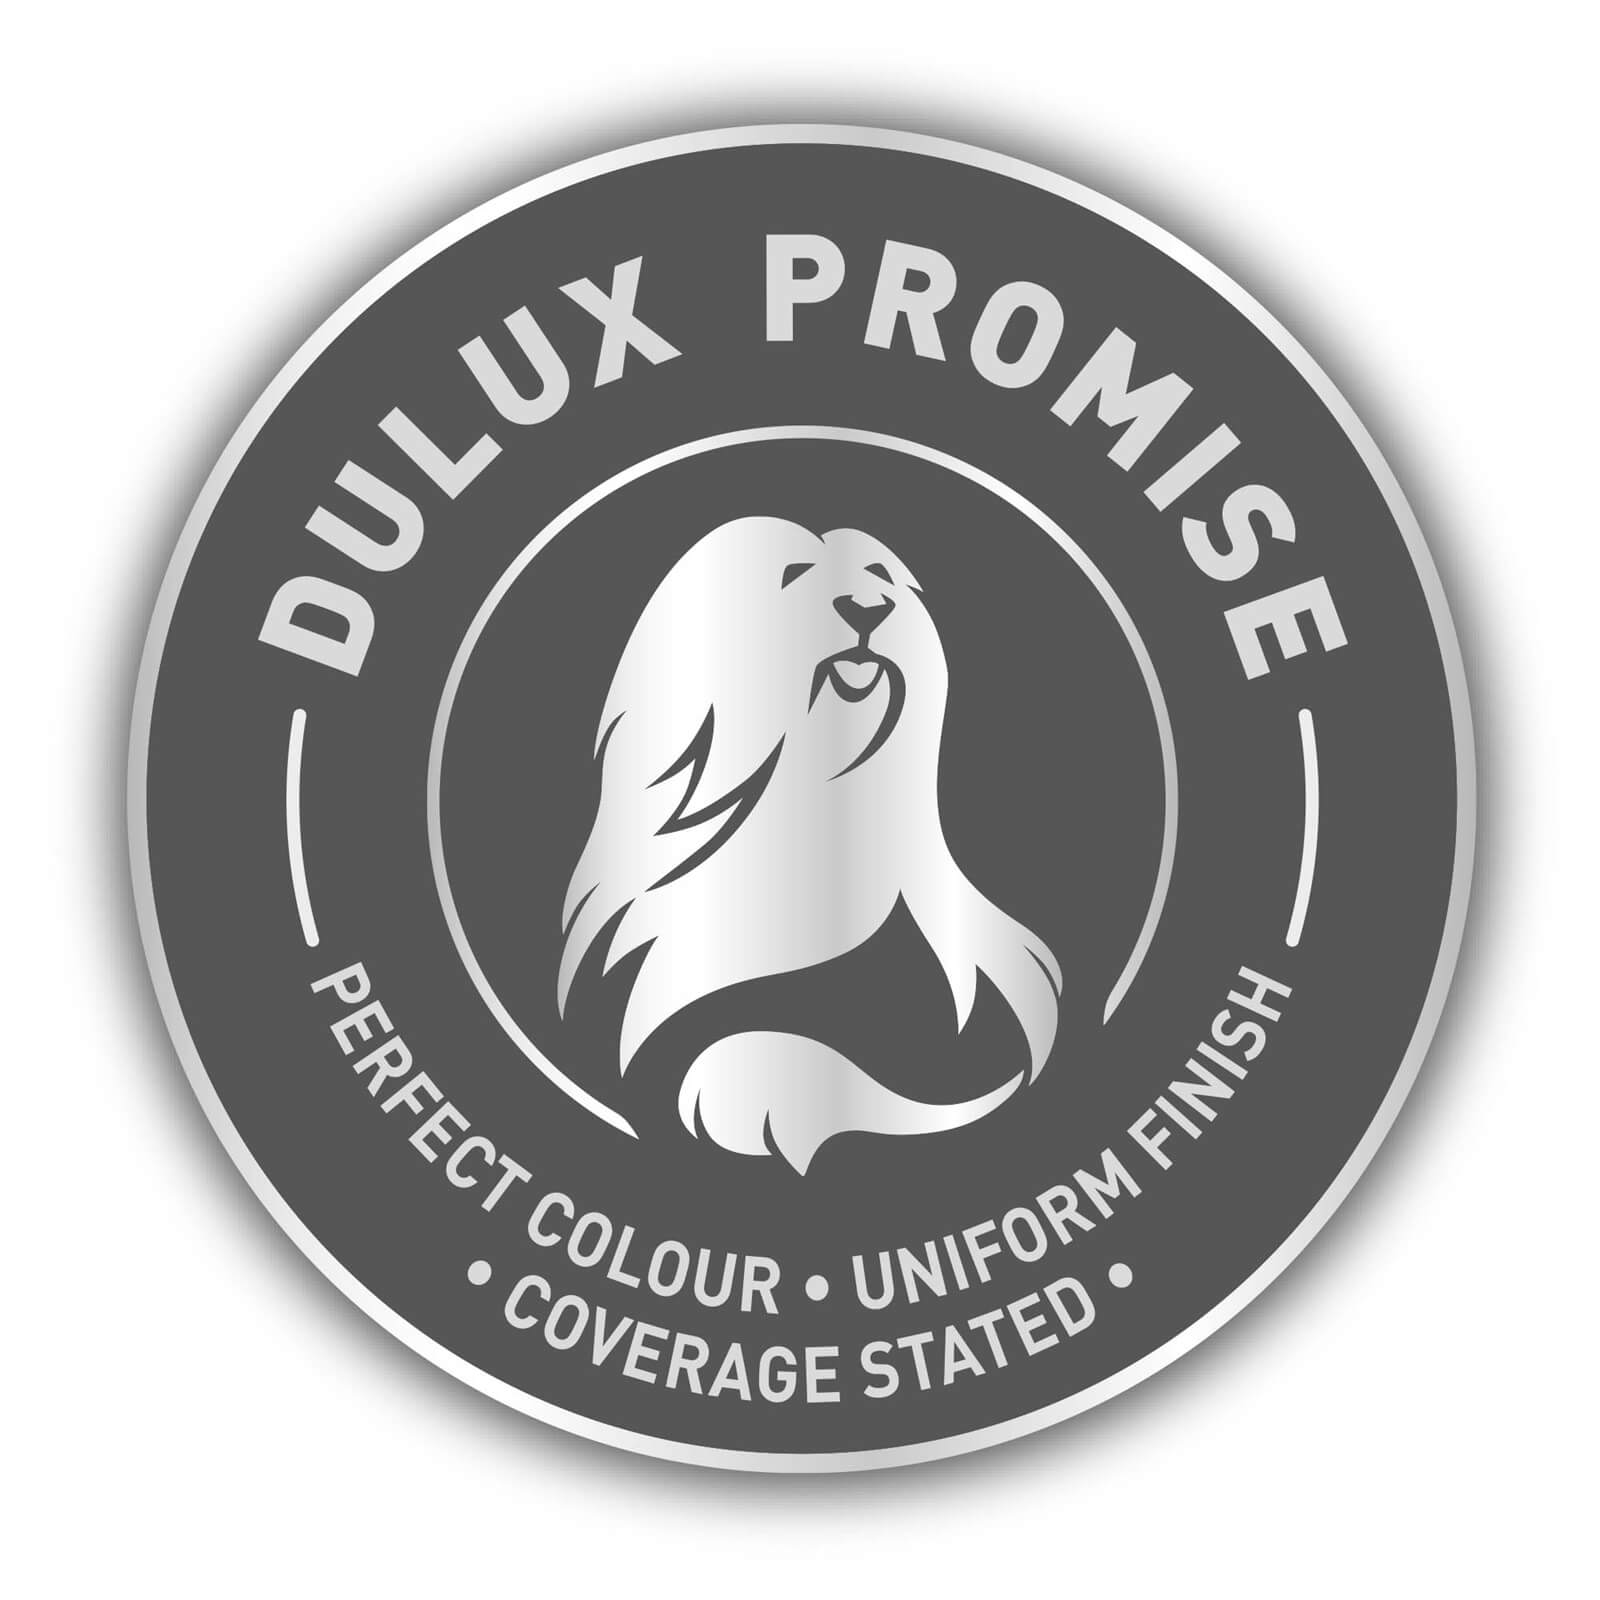 Dulux Silk Emulsion Paint Pure Brilliant White - 5L